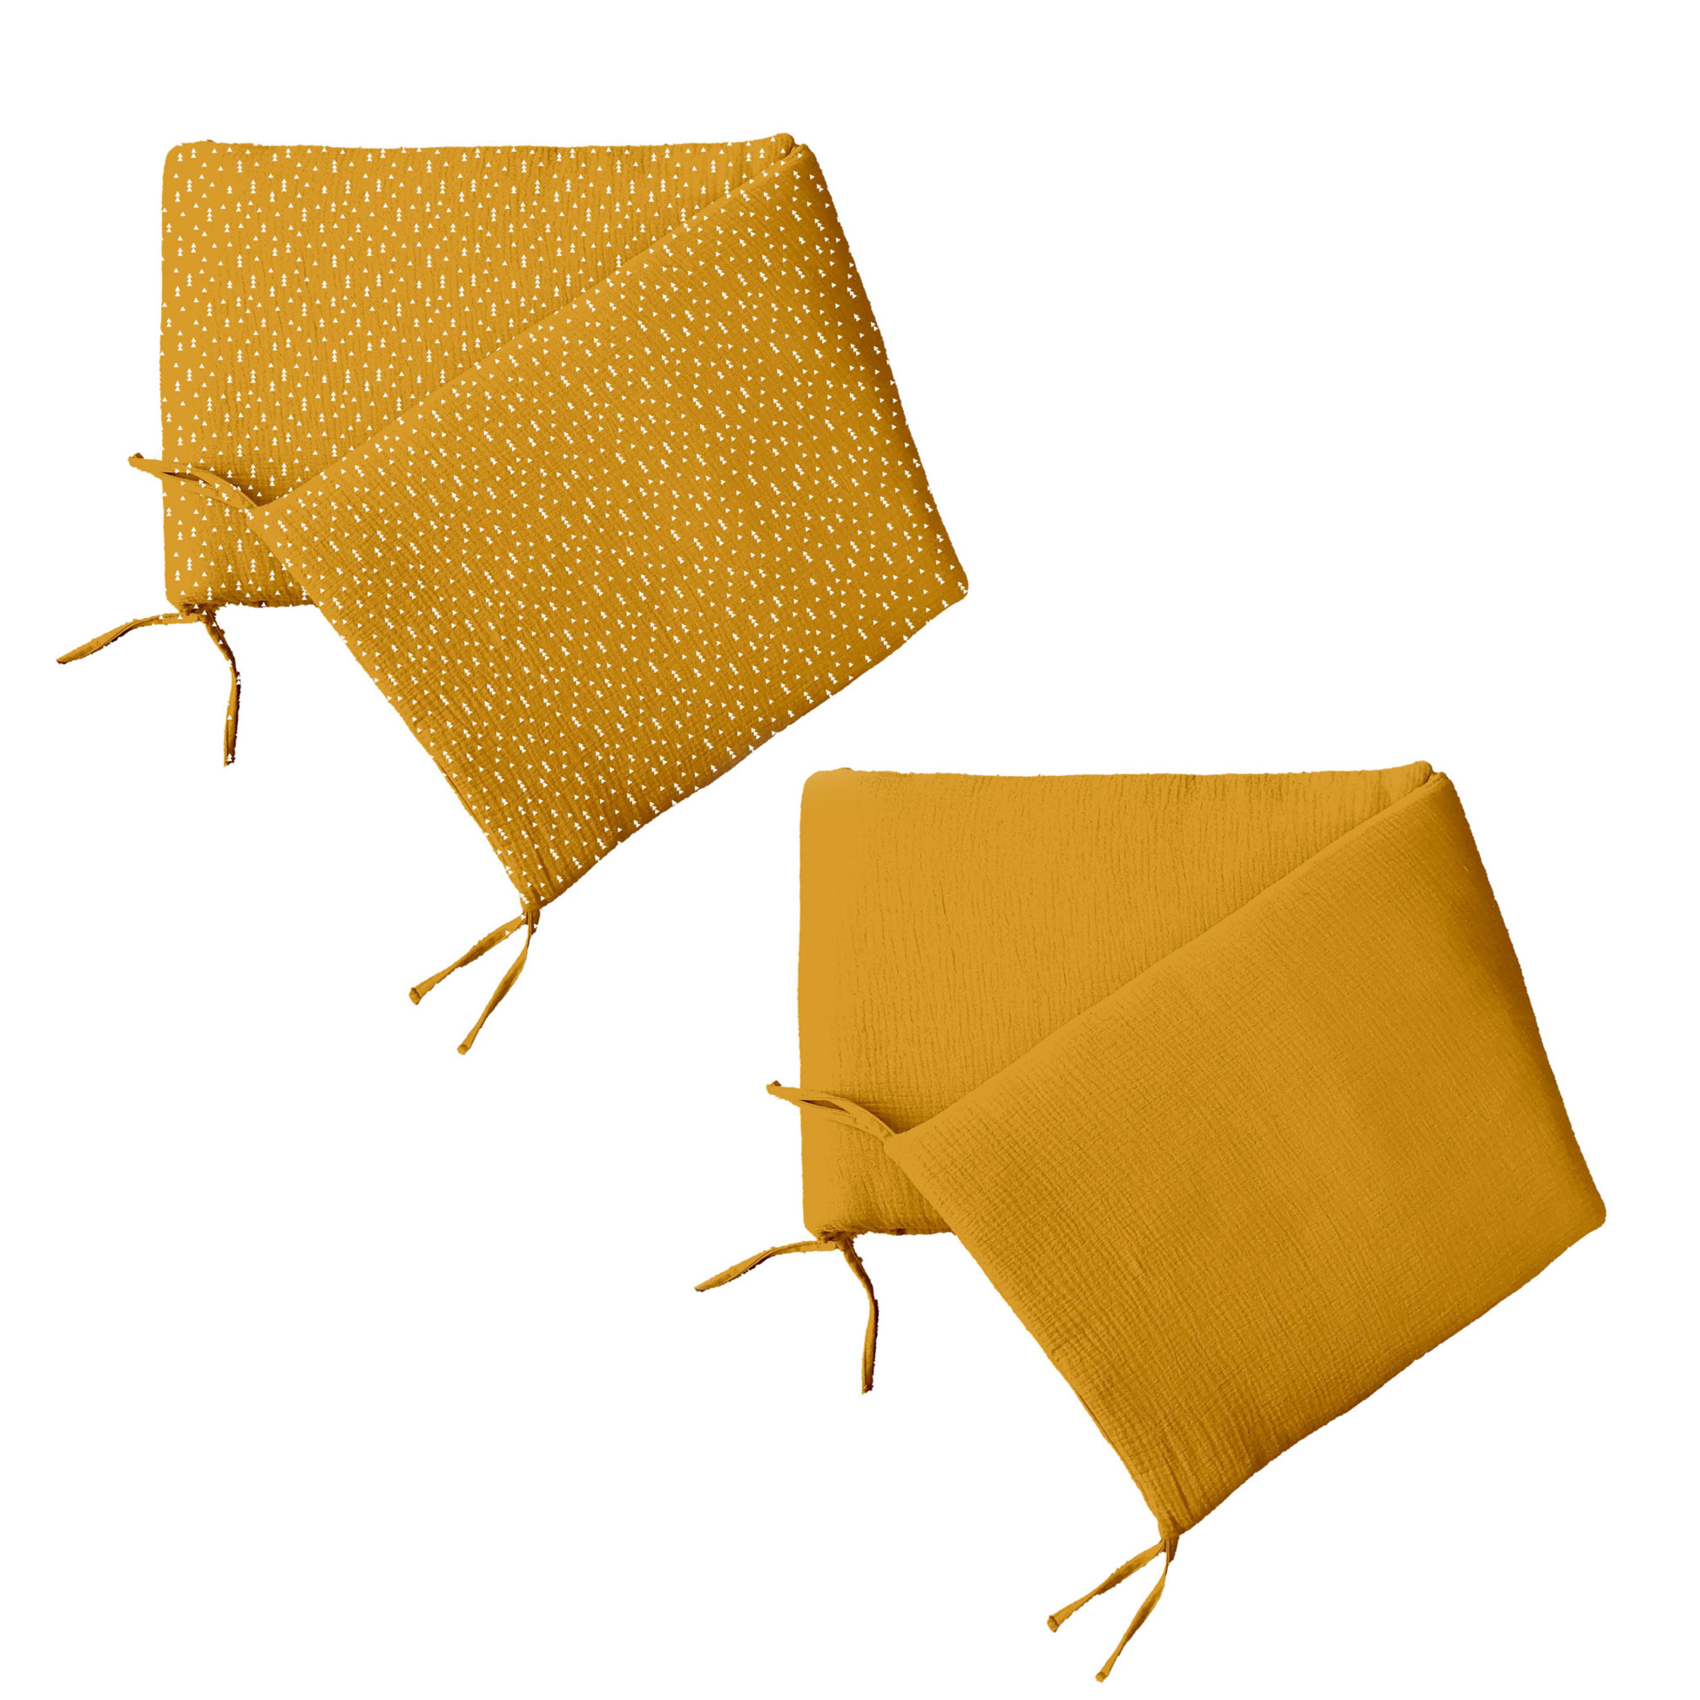 Tour de lit réversible à motifs géométriques coton moutarde 180 x 40